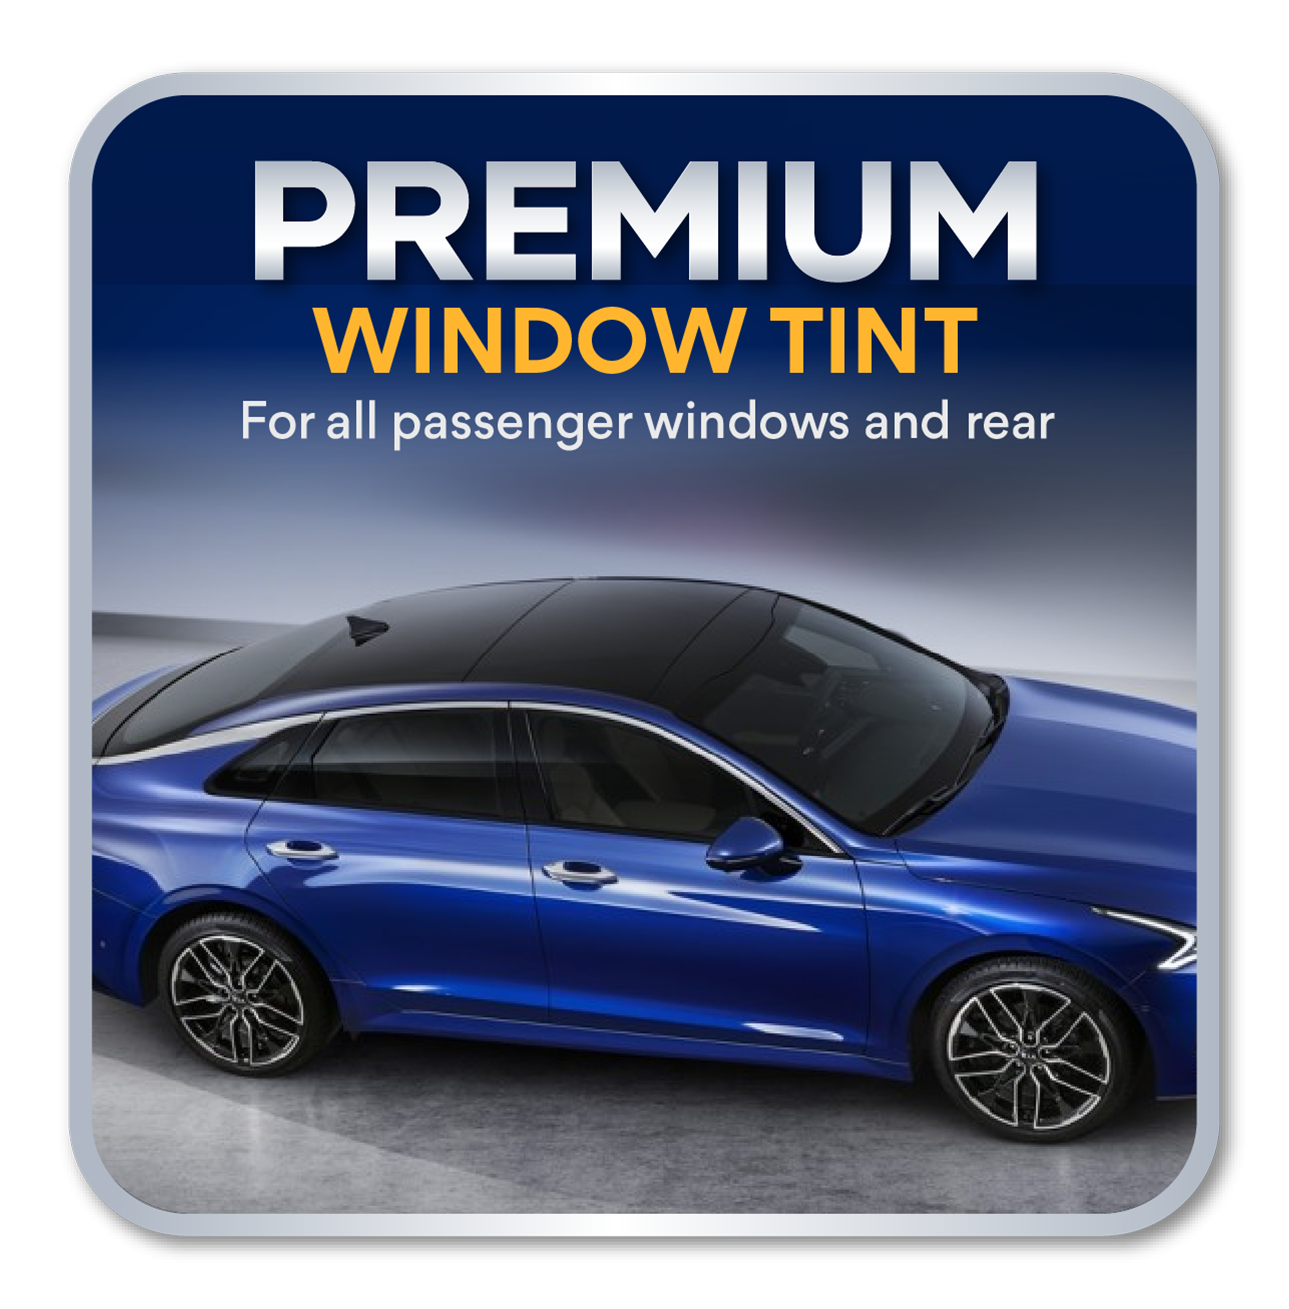 Premium Window Tint